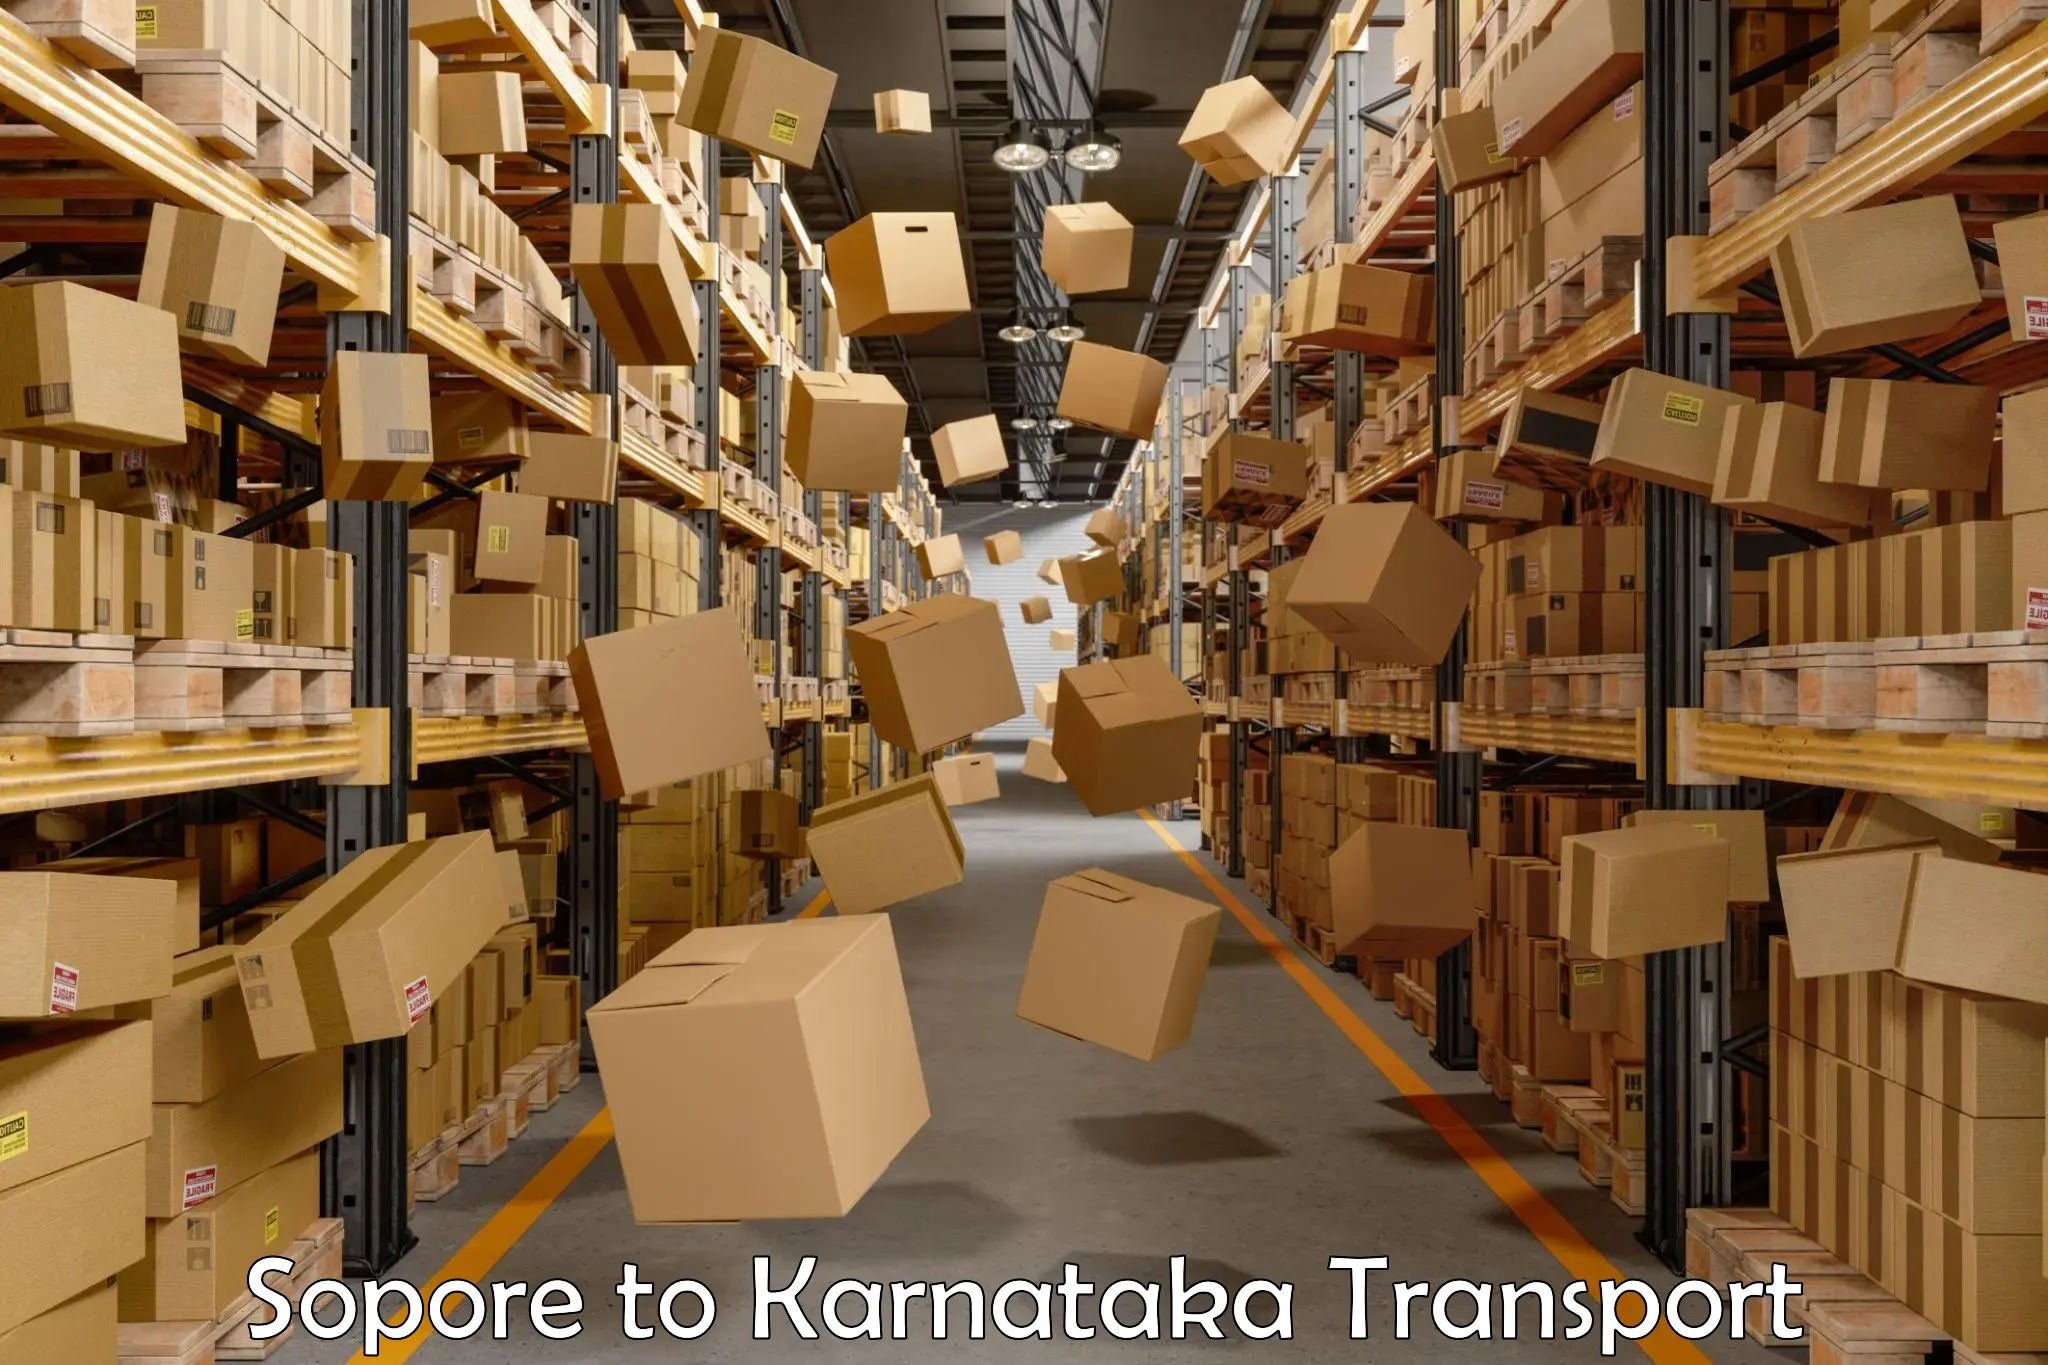 Transport in sharing Sopore to Karnataka